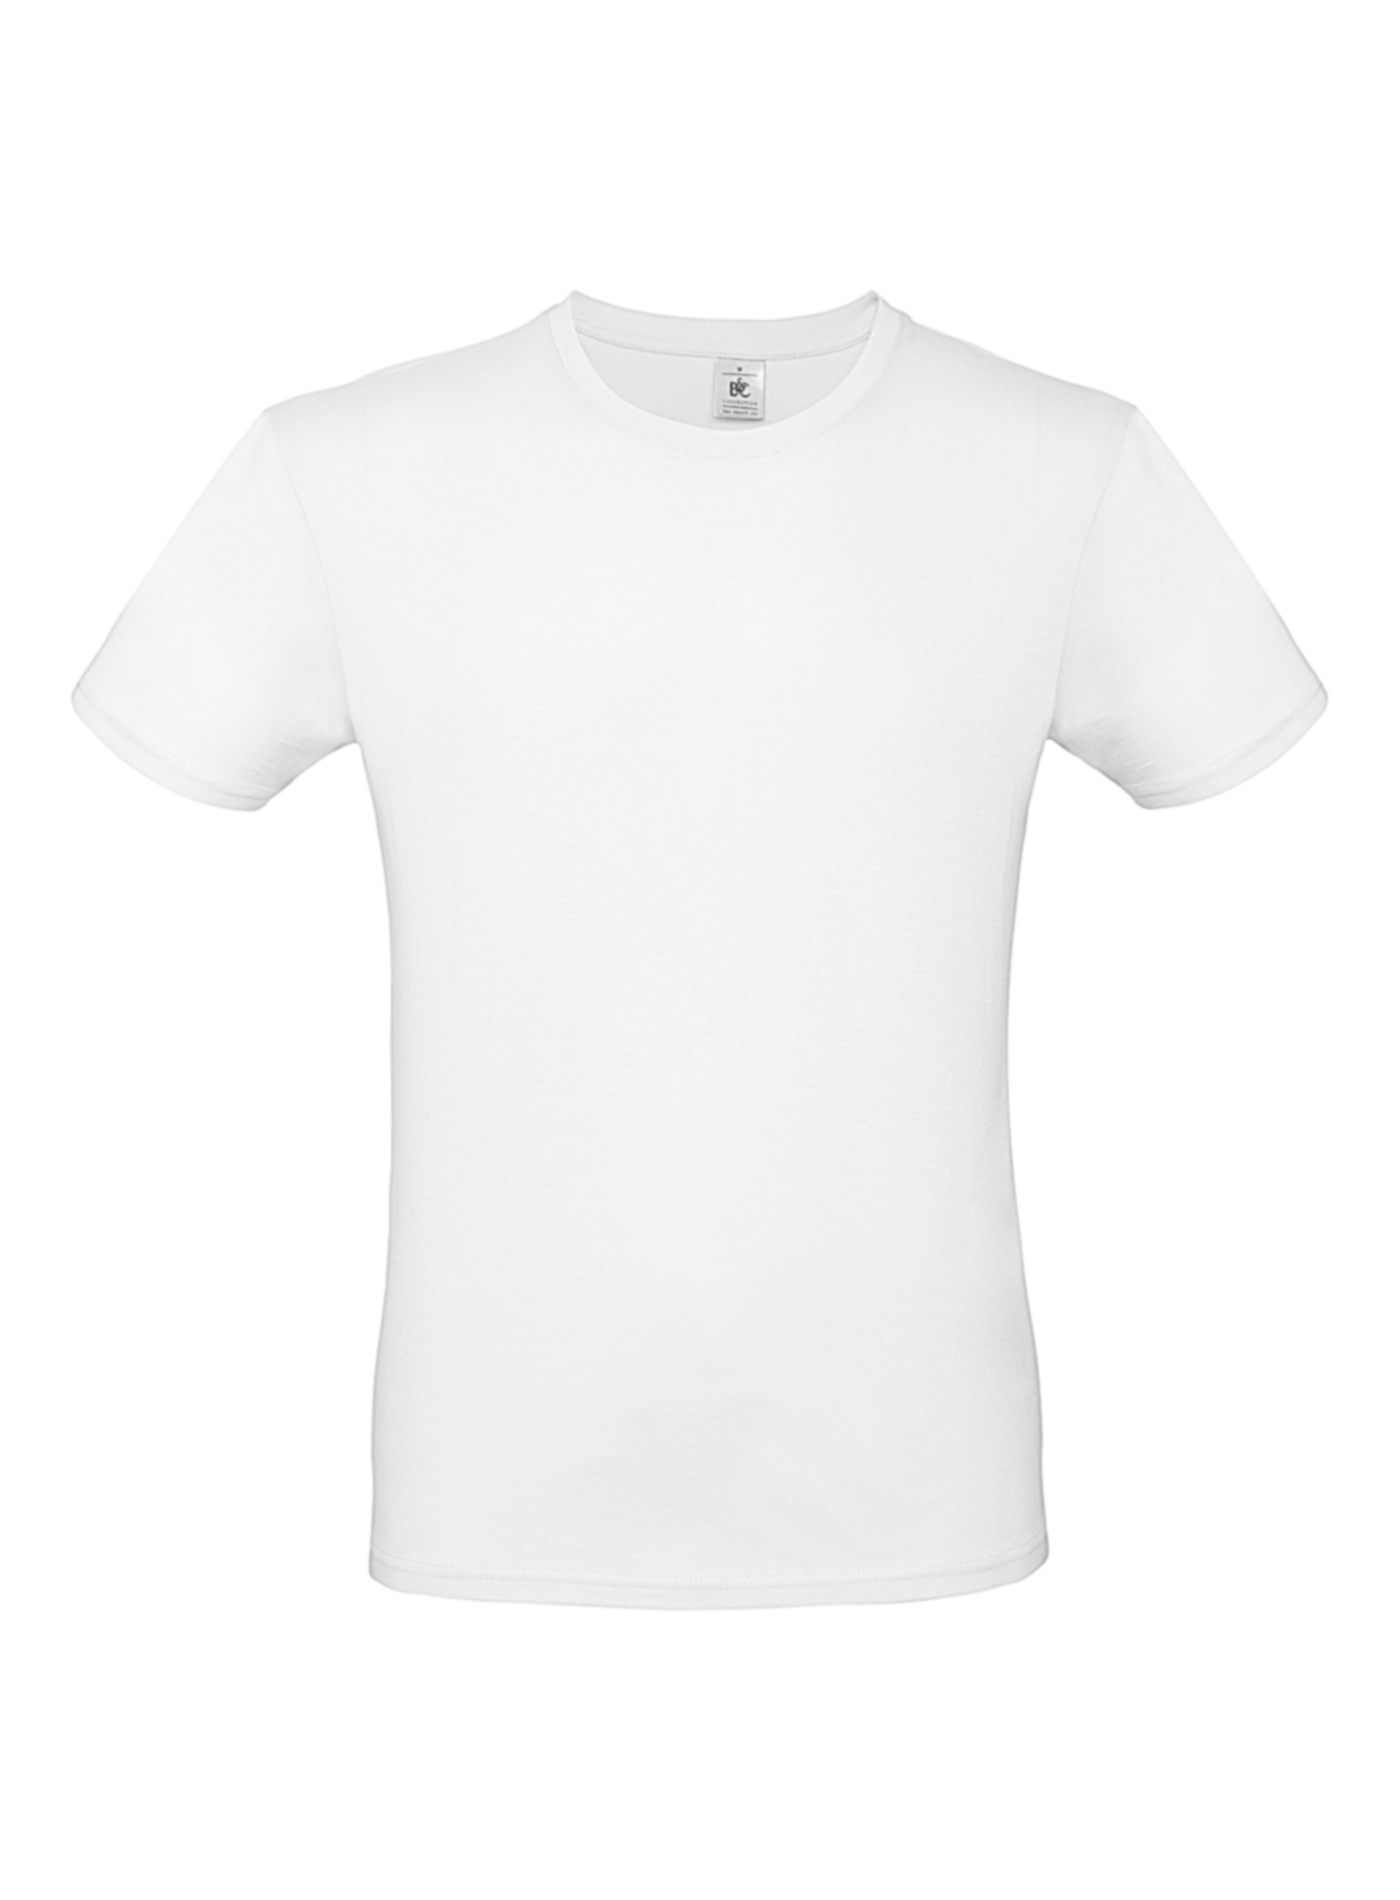 Pánské tričko B&C - Bílá 3XL